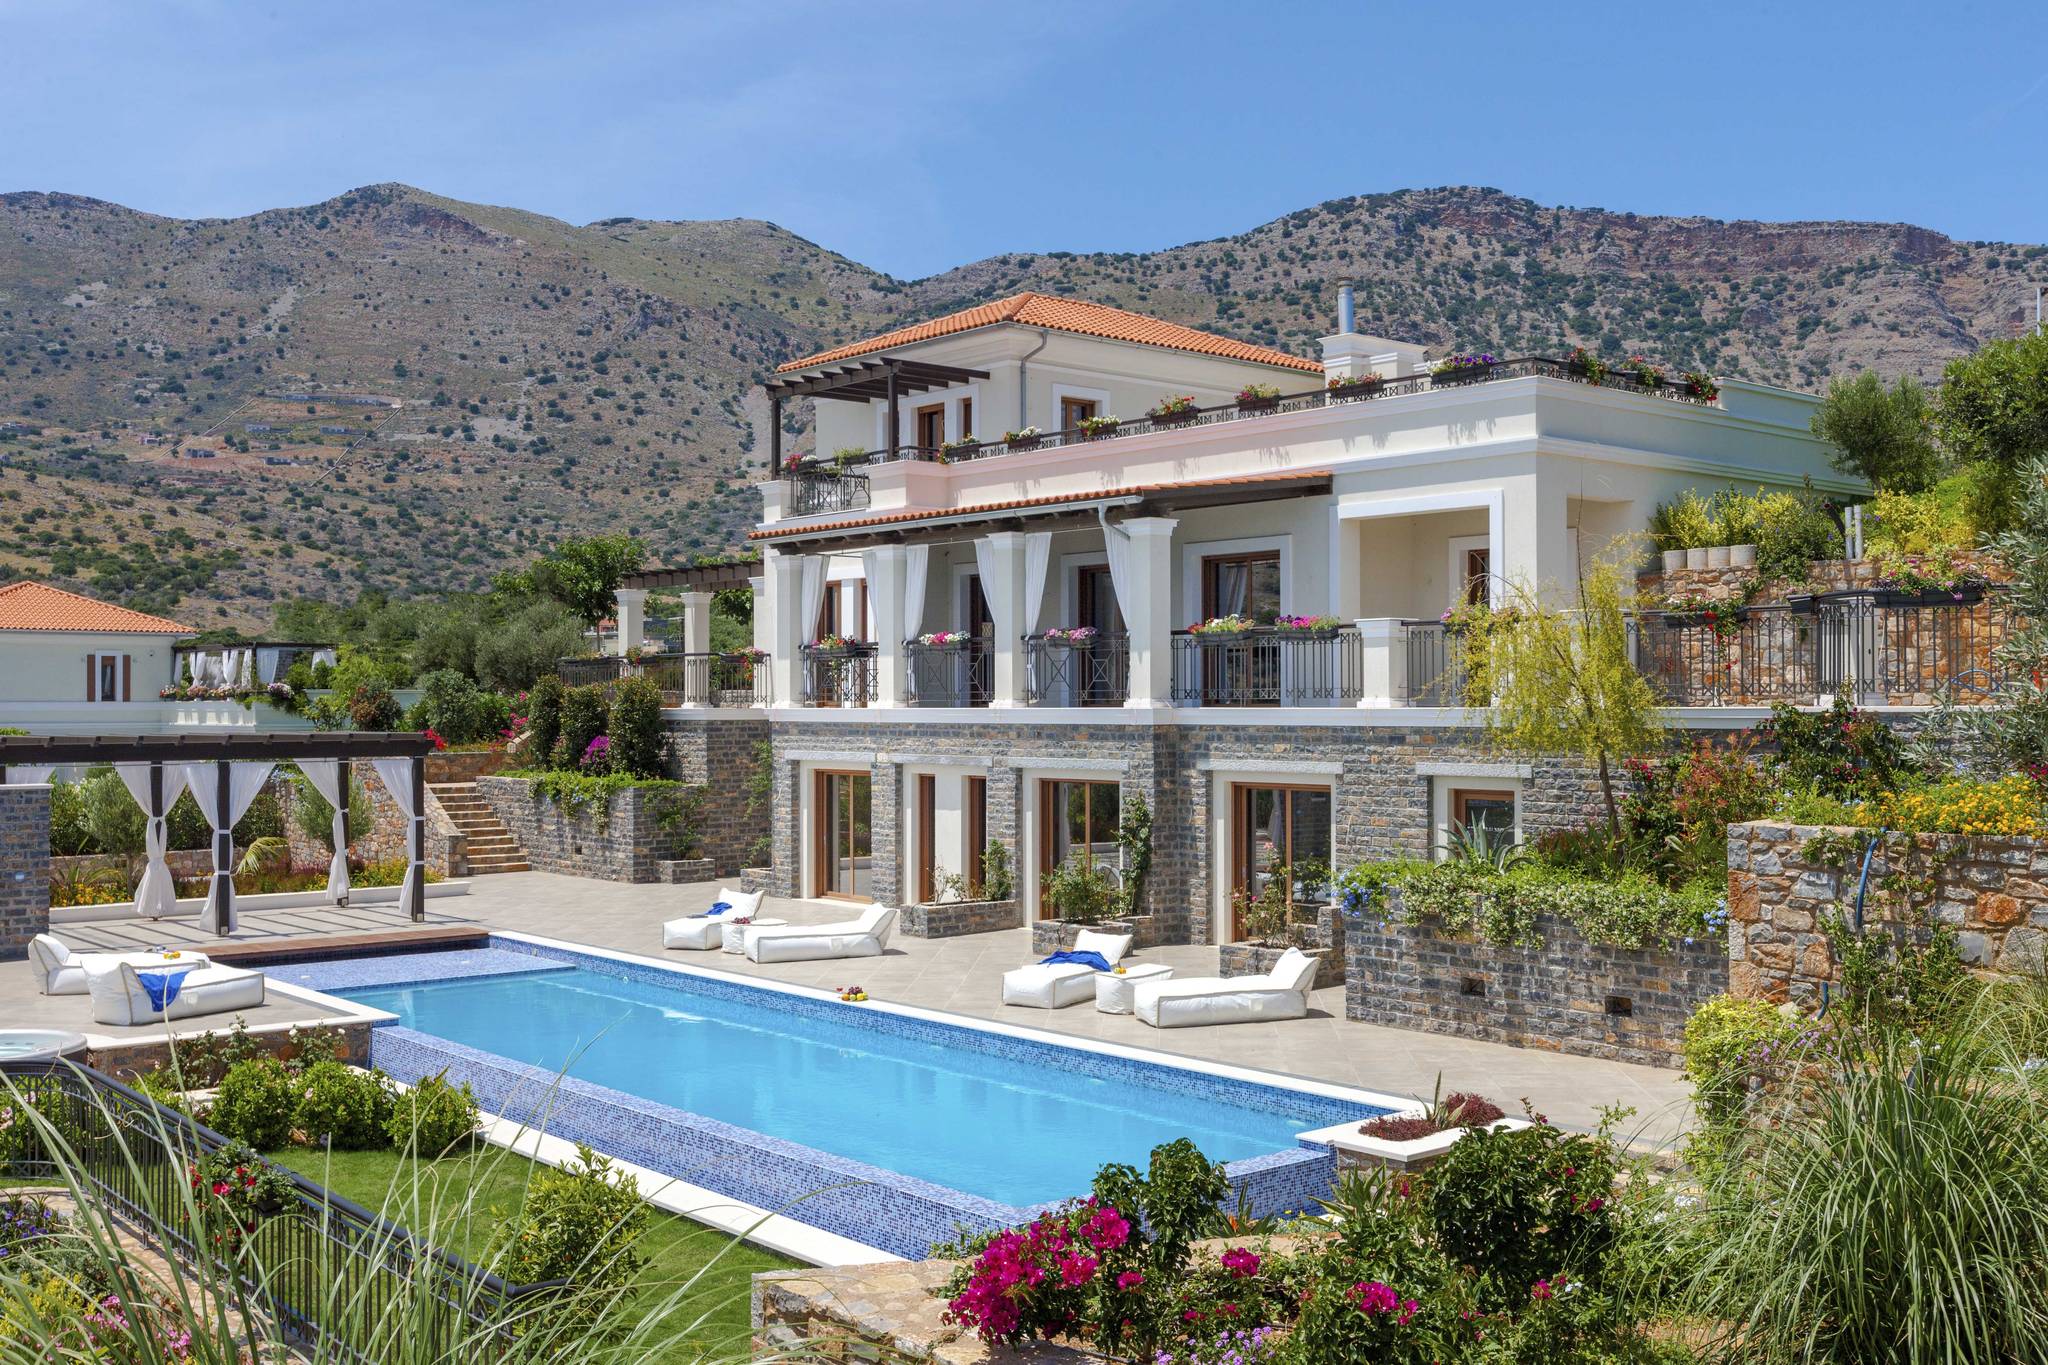 Magnifica villa di lusso nell’incantevole isola di Creta